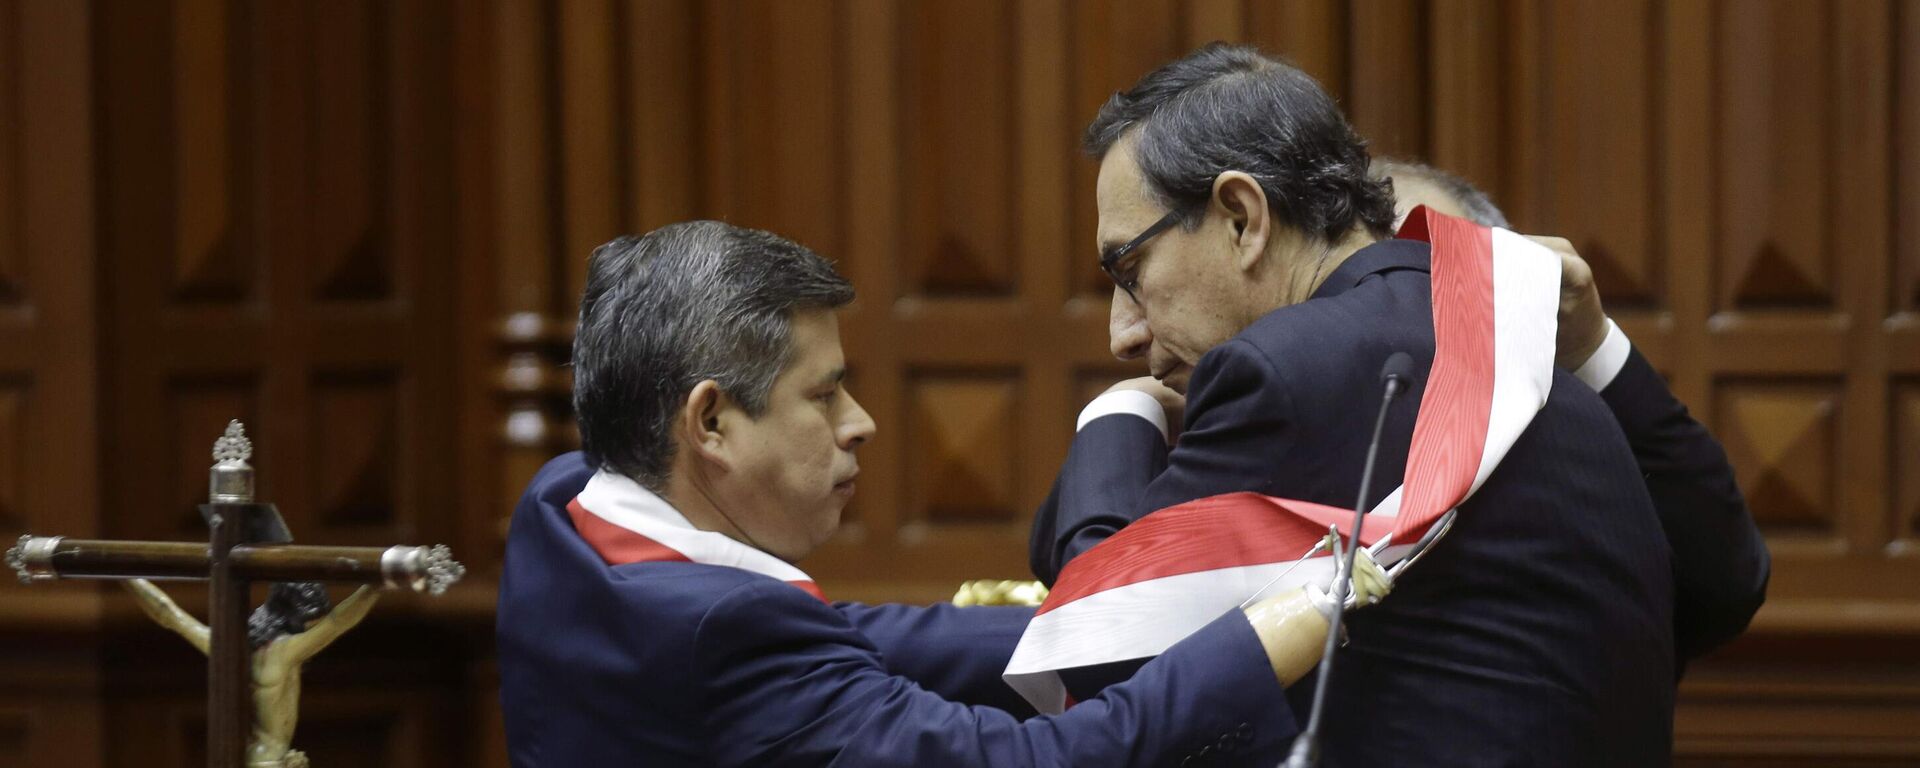 Martín Vizcarra recibe la banda presidencial de Perú en 2018 por parte del entonces presidente el Congreso, Luis Galarreta - Sputnik Mundo, 1920, 09.12.2022